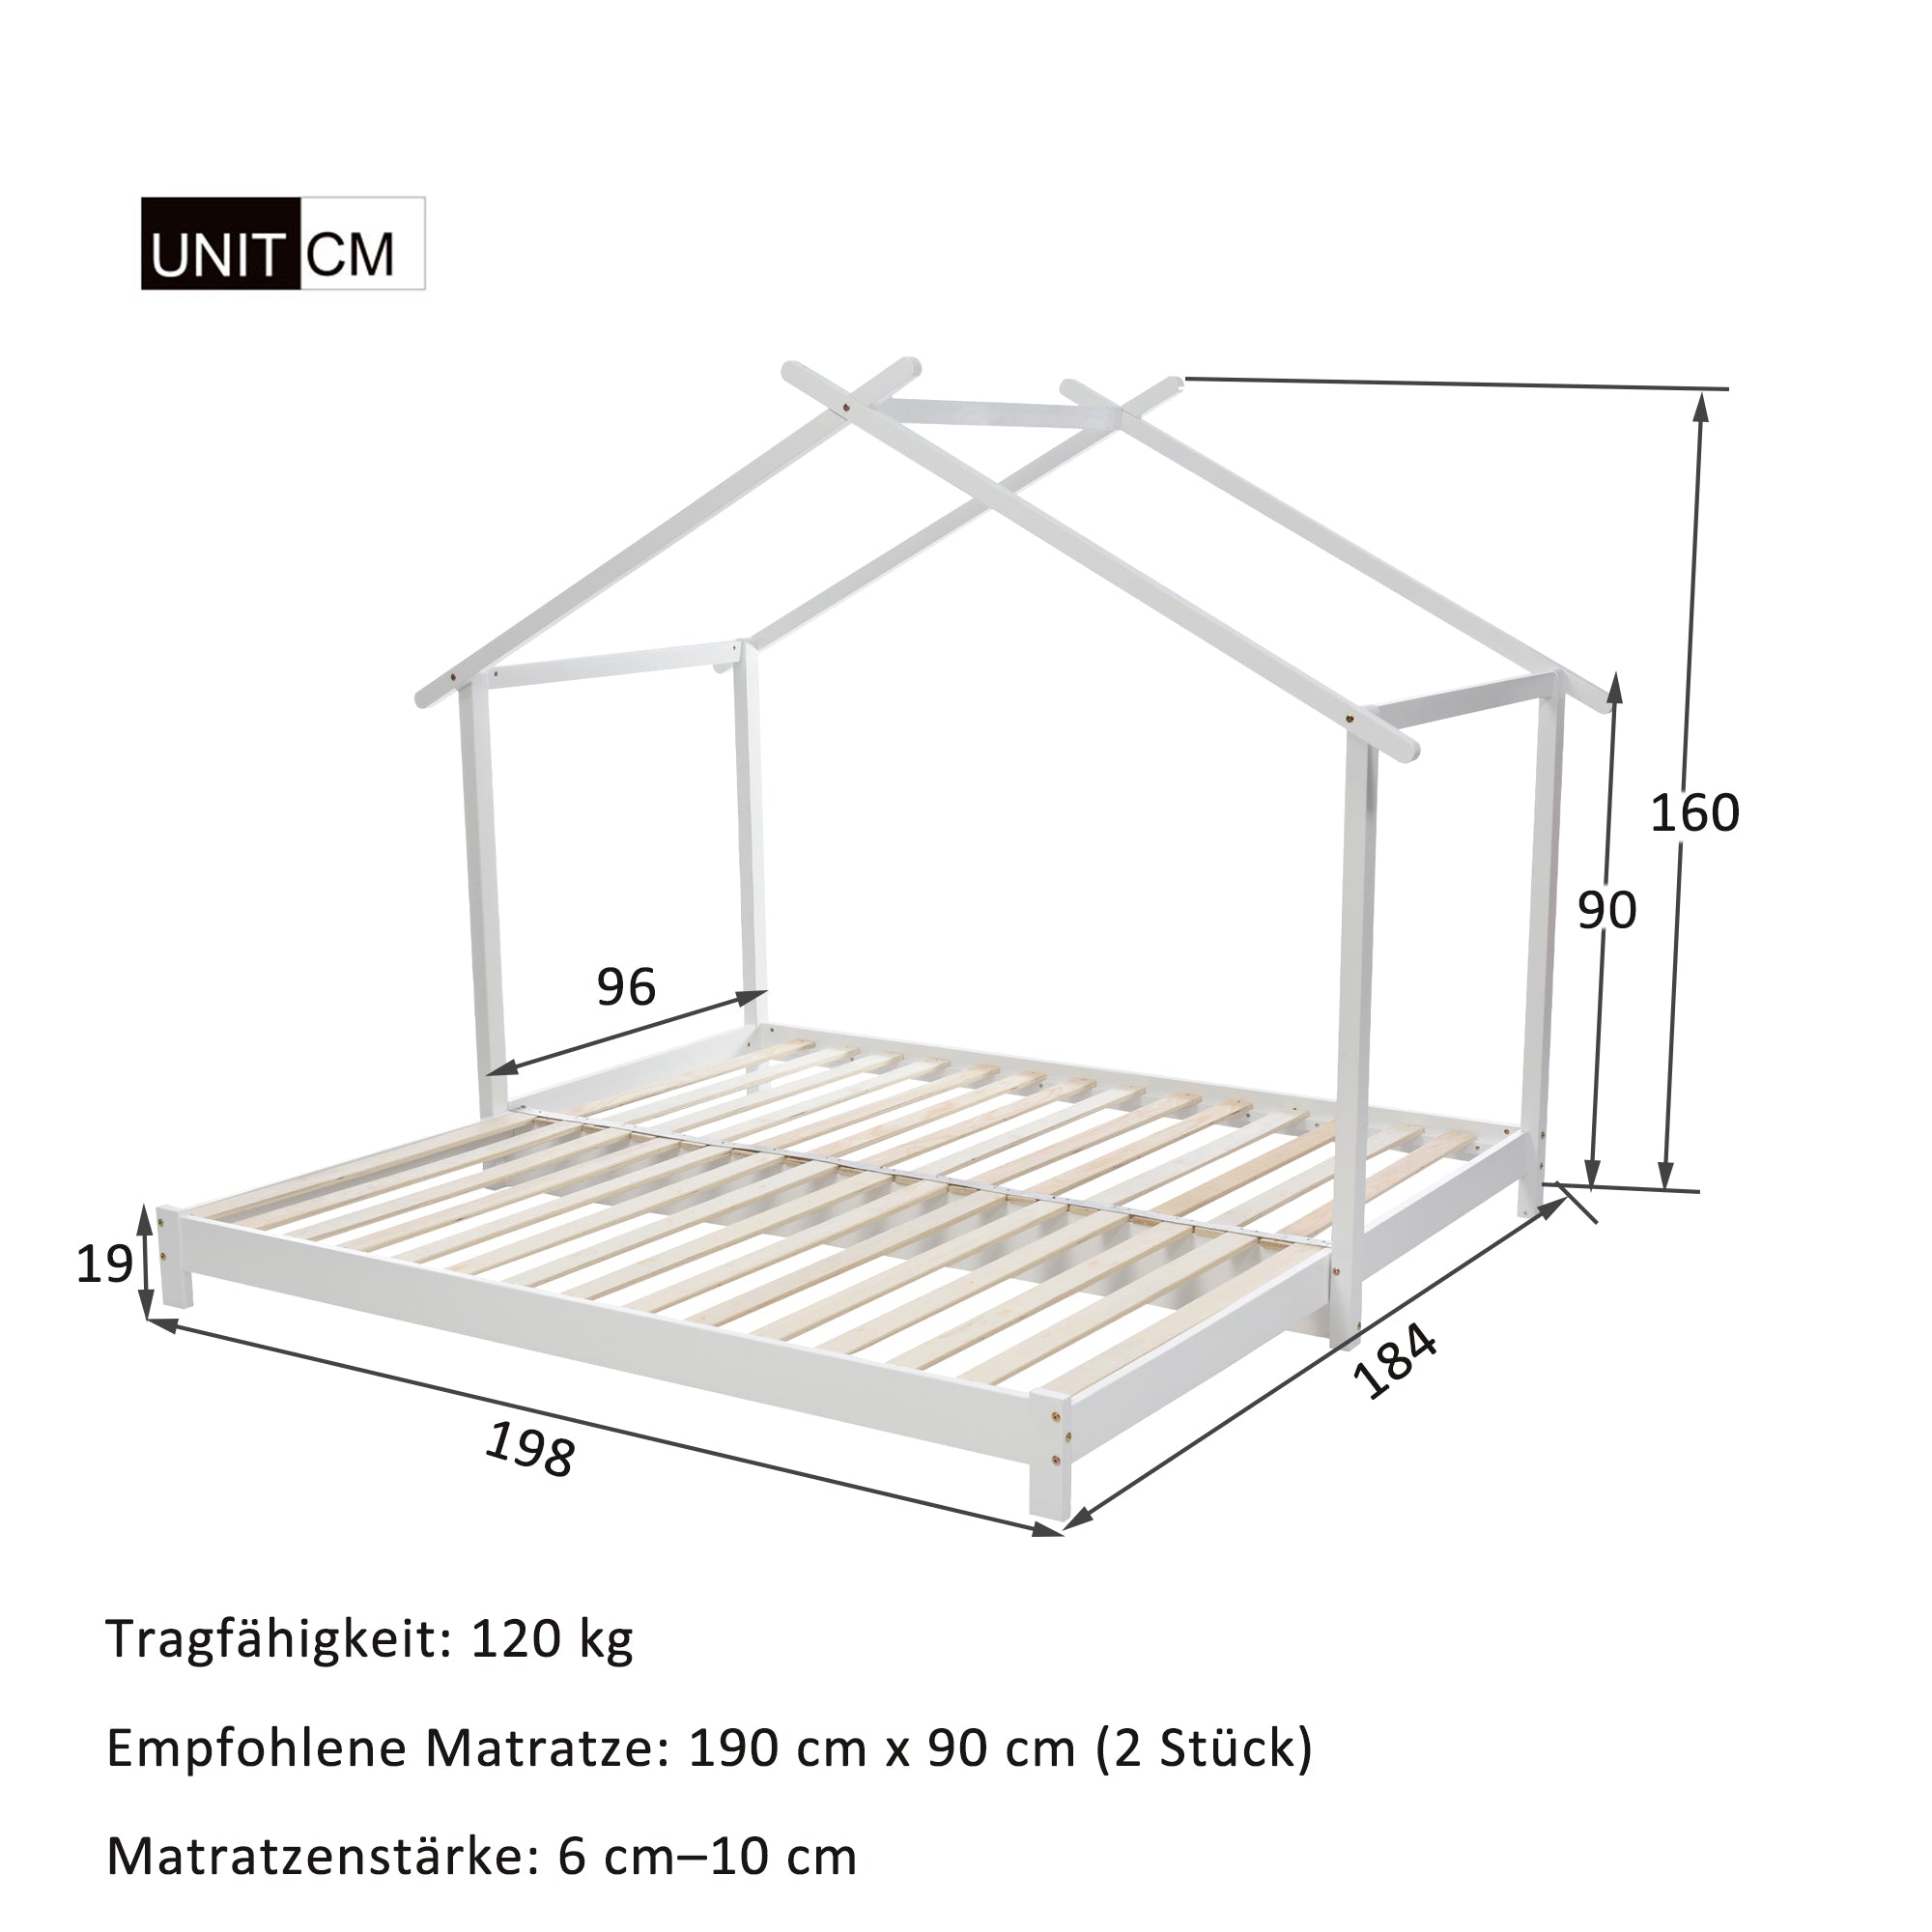 Hausbett 90 /180 x 190cm Holz Kinderbett für Jungen & Mädchen Massivholz Kinder Bett umbaubar Bodenbett mit Lattenrost weiß